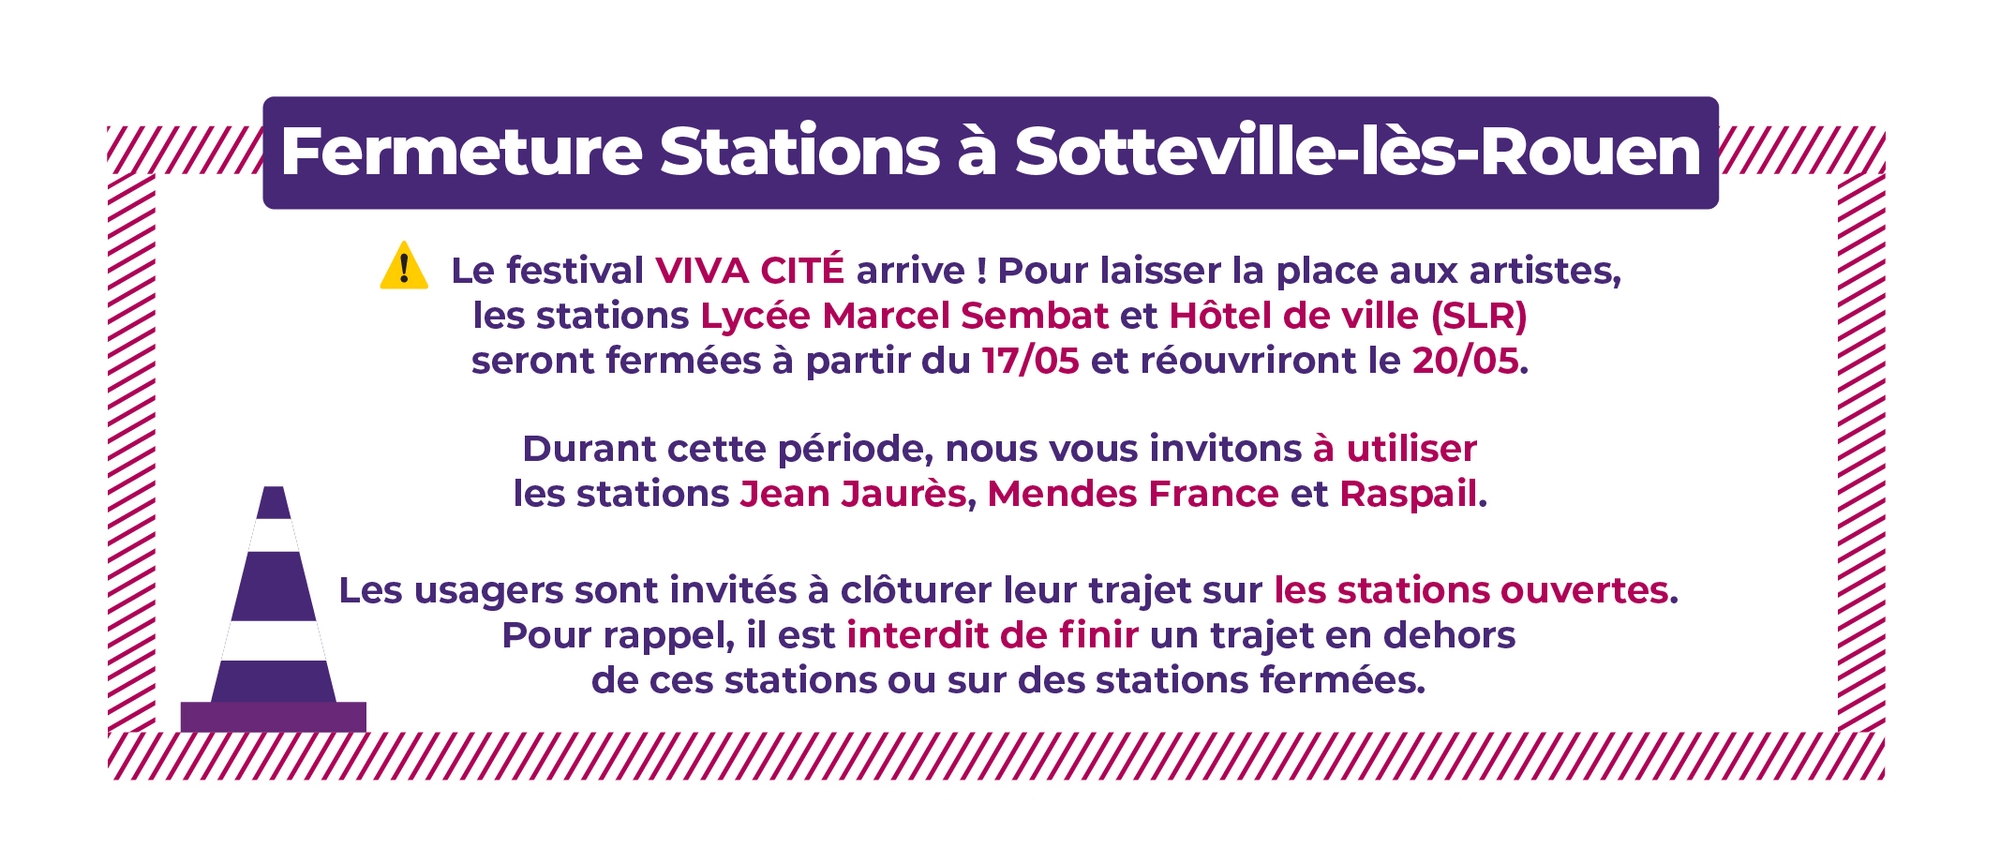 Fermeture Stations à Sotteville-lès-Rouen. Le festival VIVA CITÉ arrive ! Pour laisser la place aux artistes, les stations Lycée Marcel Sembat et Hôtel de ville (SLR) seront fermées à partir du 17/05 et réouvriront le 20/05. Durant cette période, nous vous invitons à utiliser les stations Jean Jaurès, Mendes France et Raspail. Les usagers sont invités à clôturer leur trajet sur les stations ouvertes. Pour rappel, il est interdit de finir un trajet en dehors de ces stations ou sur des stations fermées